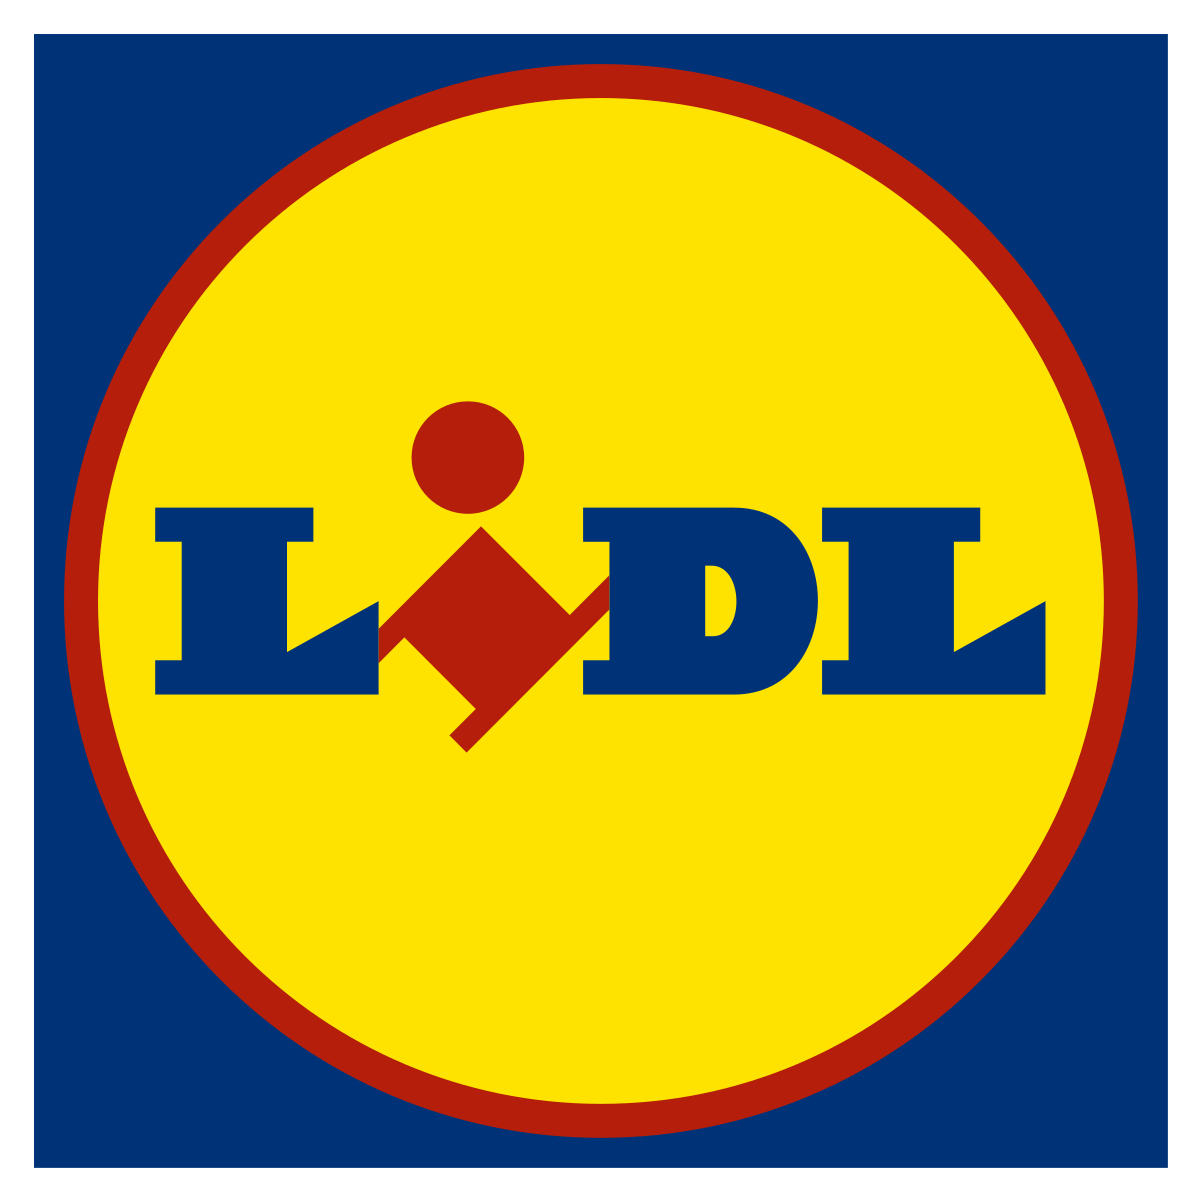 Lidl-Logo.svg